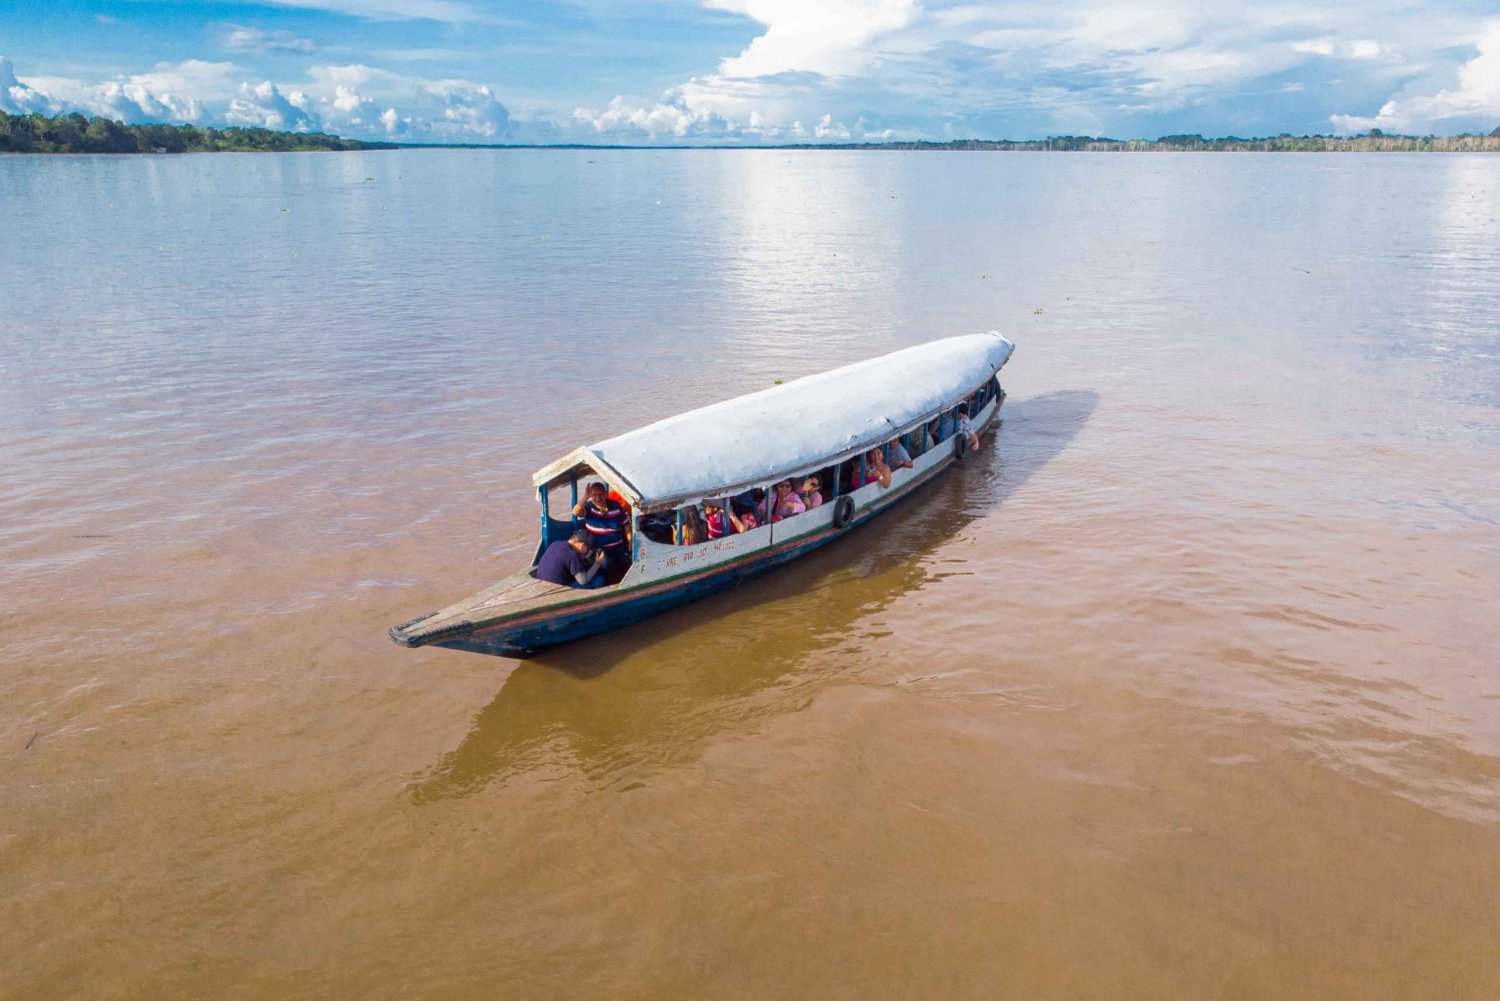 Iquitos (Perú): 3 Dagen Amazone Lodge Door: Canopy Tours Iquitos